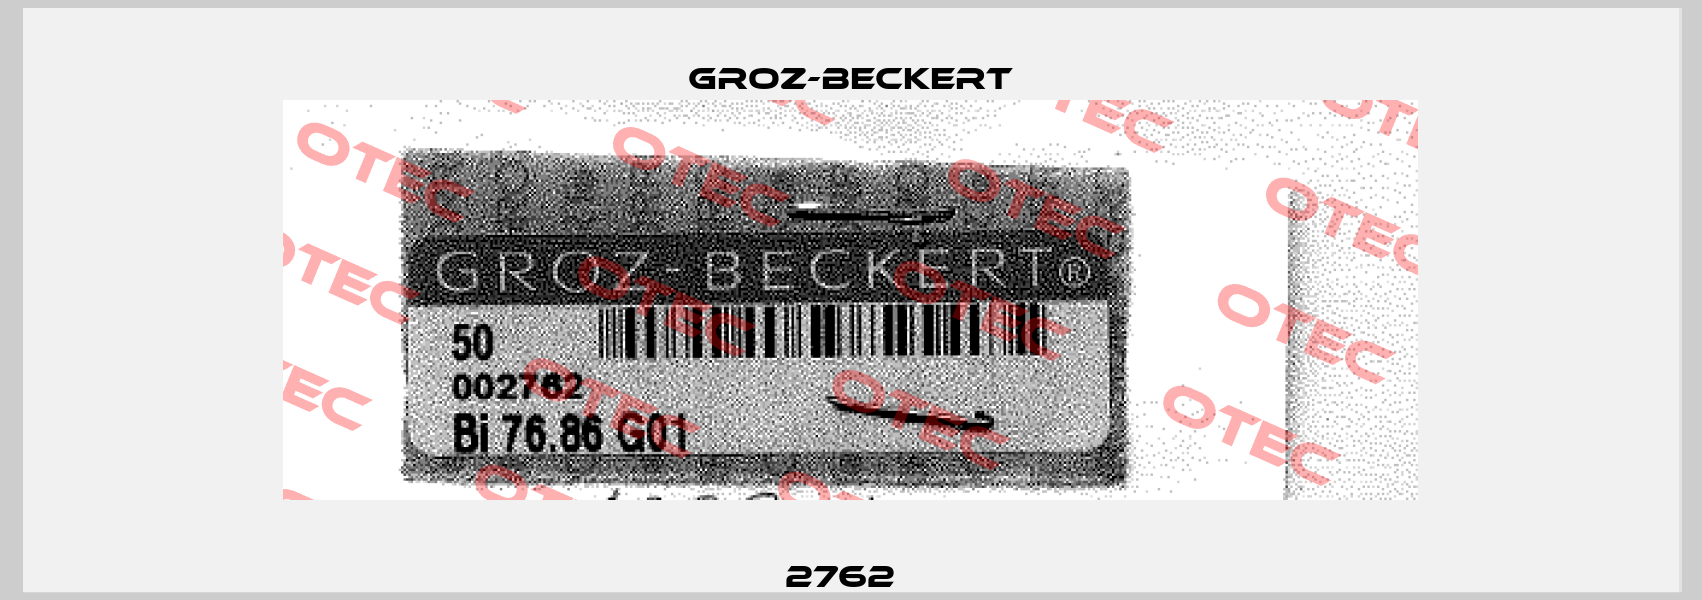 2762   Groz-Beckert